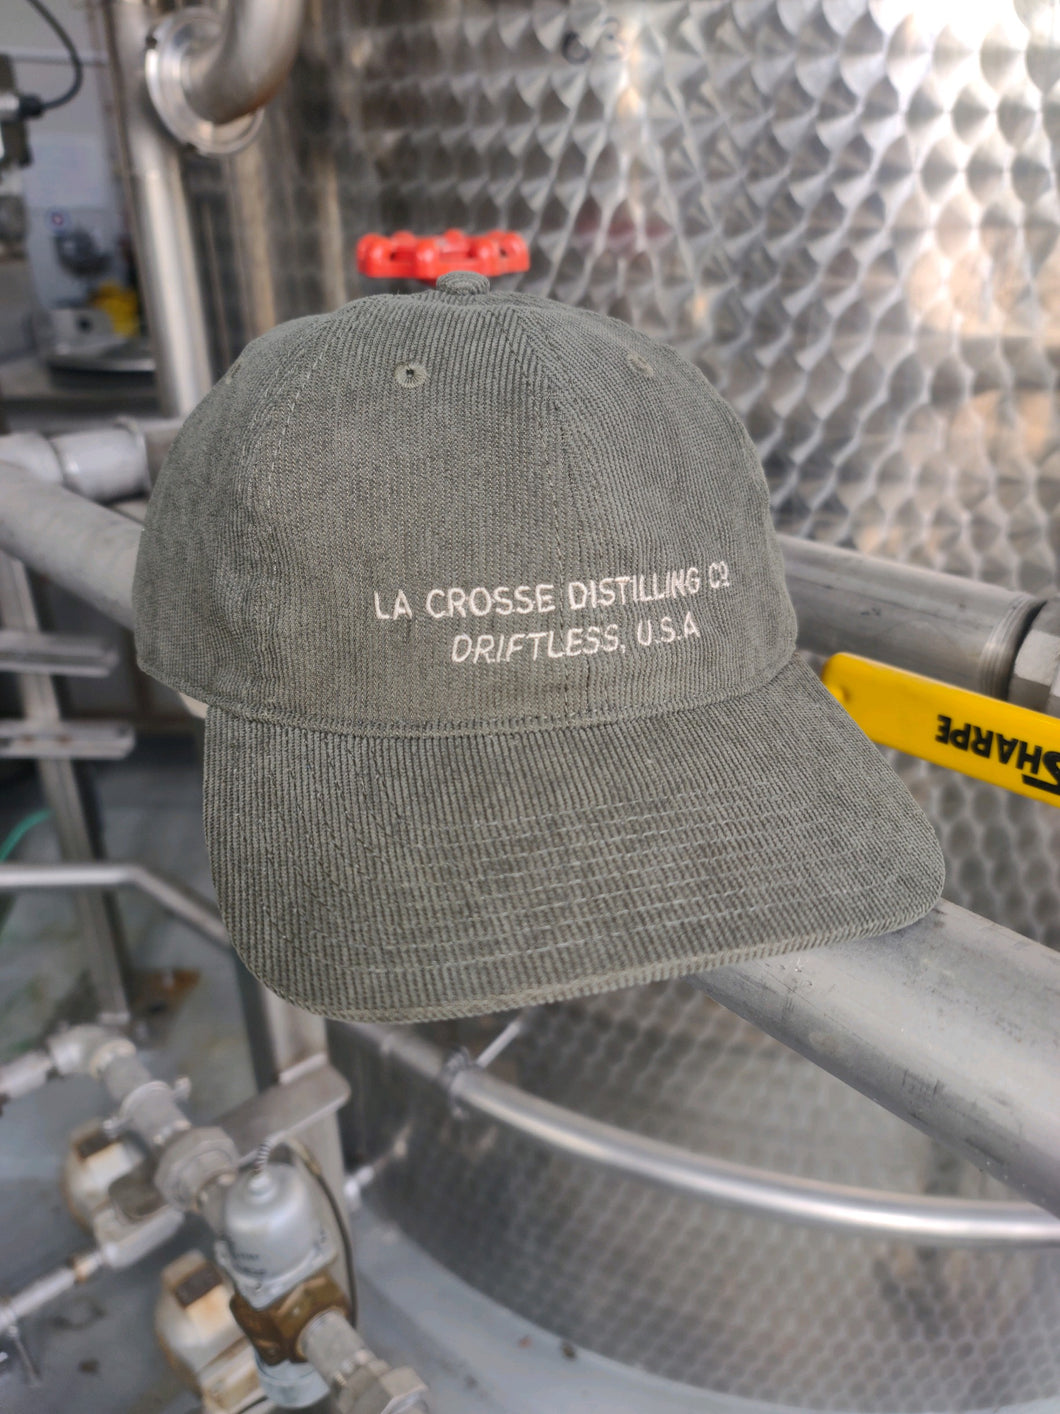 La crosse Distilling Co. Driftless U.S.A Corduroy Hat